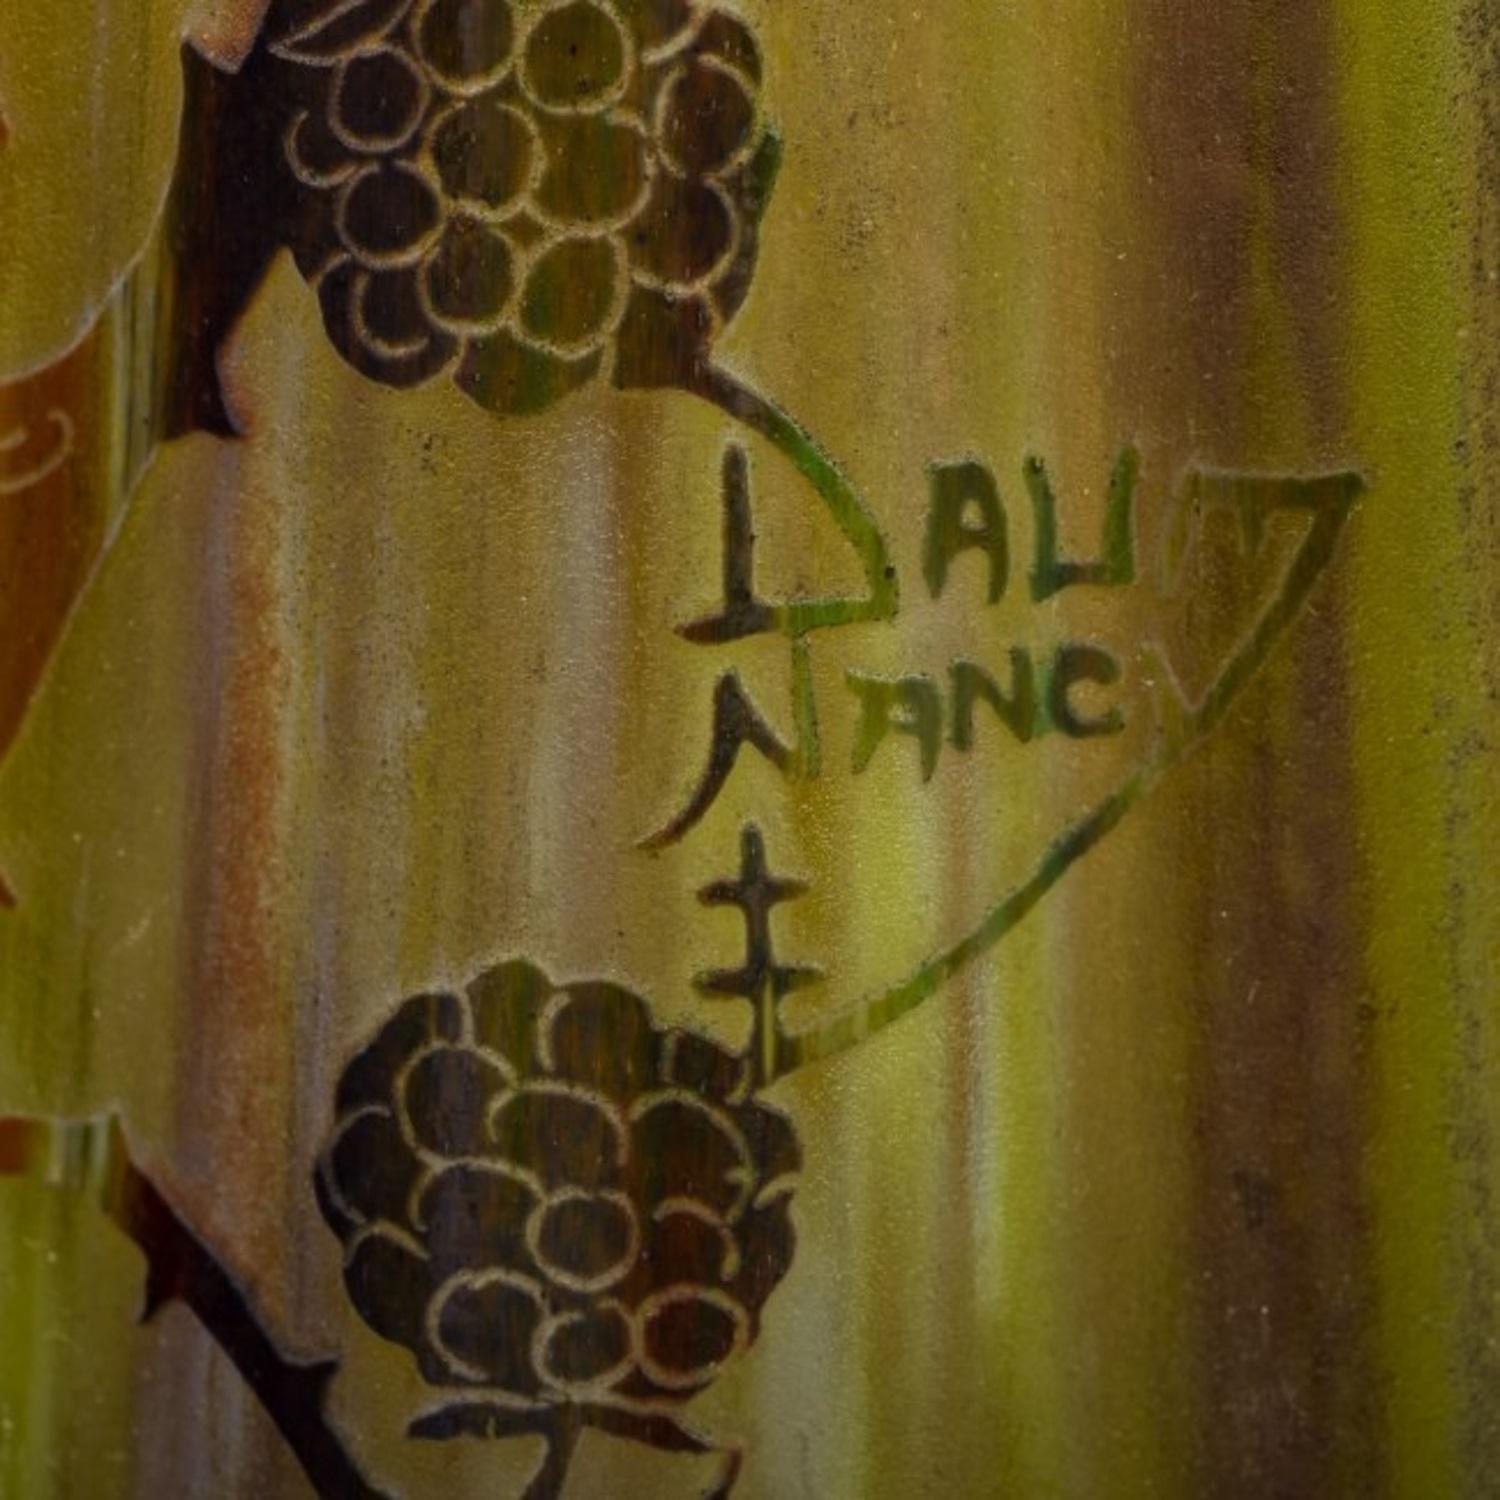 Eine hohe und feine Daum Nancy innen dekoriert Kamee Glasvase
Frankreich, um 1910
Dreieckige Form A, verziert mit Beeren, Blättern und Blumen auf grünem, opalisierendem, gelbem und gesprenkeltem Grund, auf einem dreieckigen Fuß
Kamee-Marke Daum